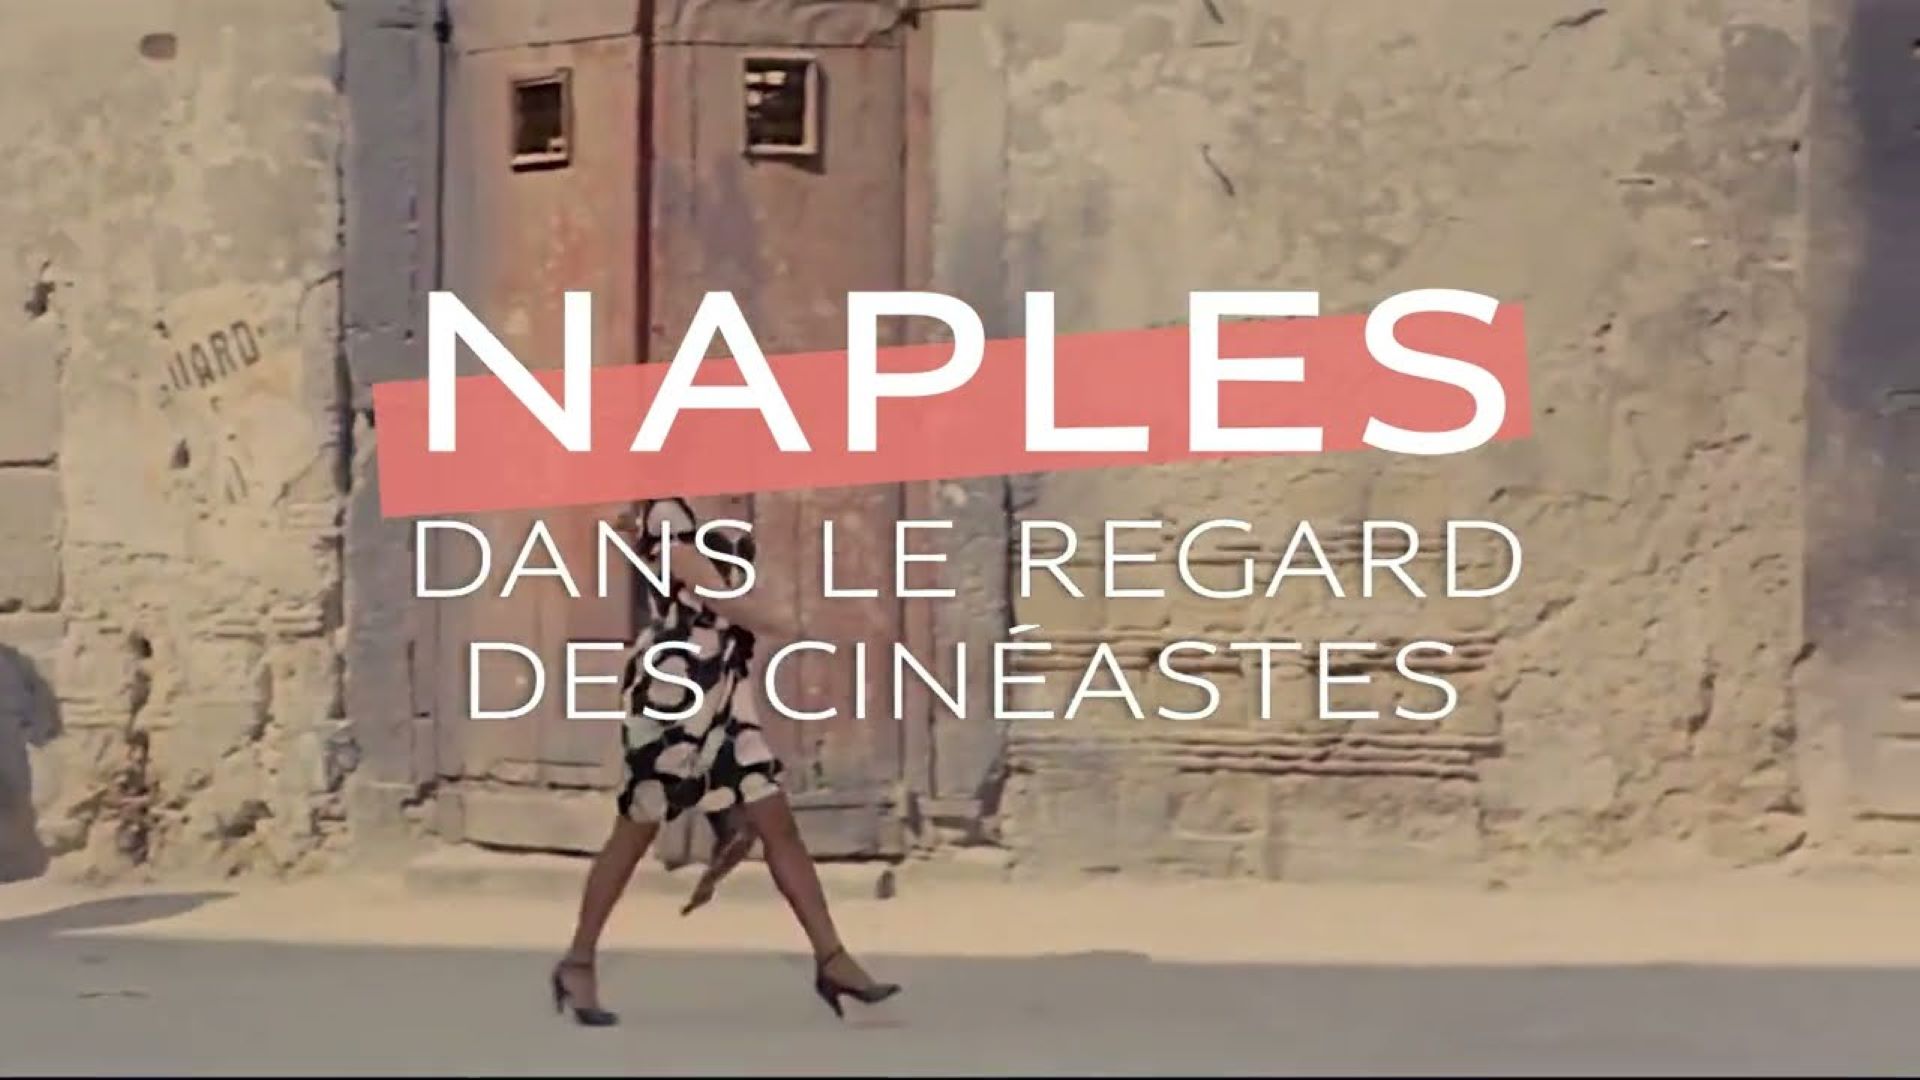 festival « Naples dans le regard des cinéastes »